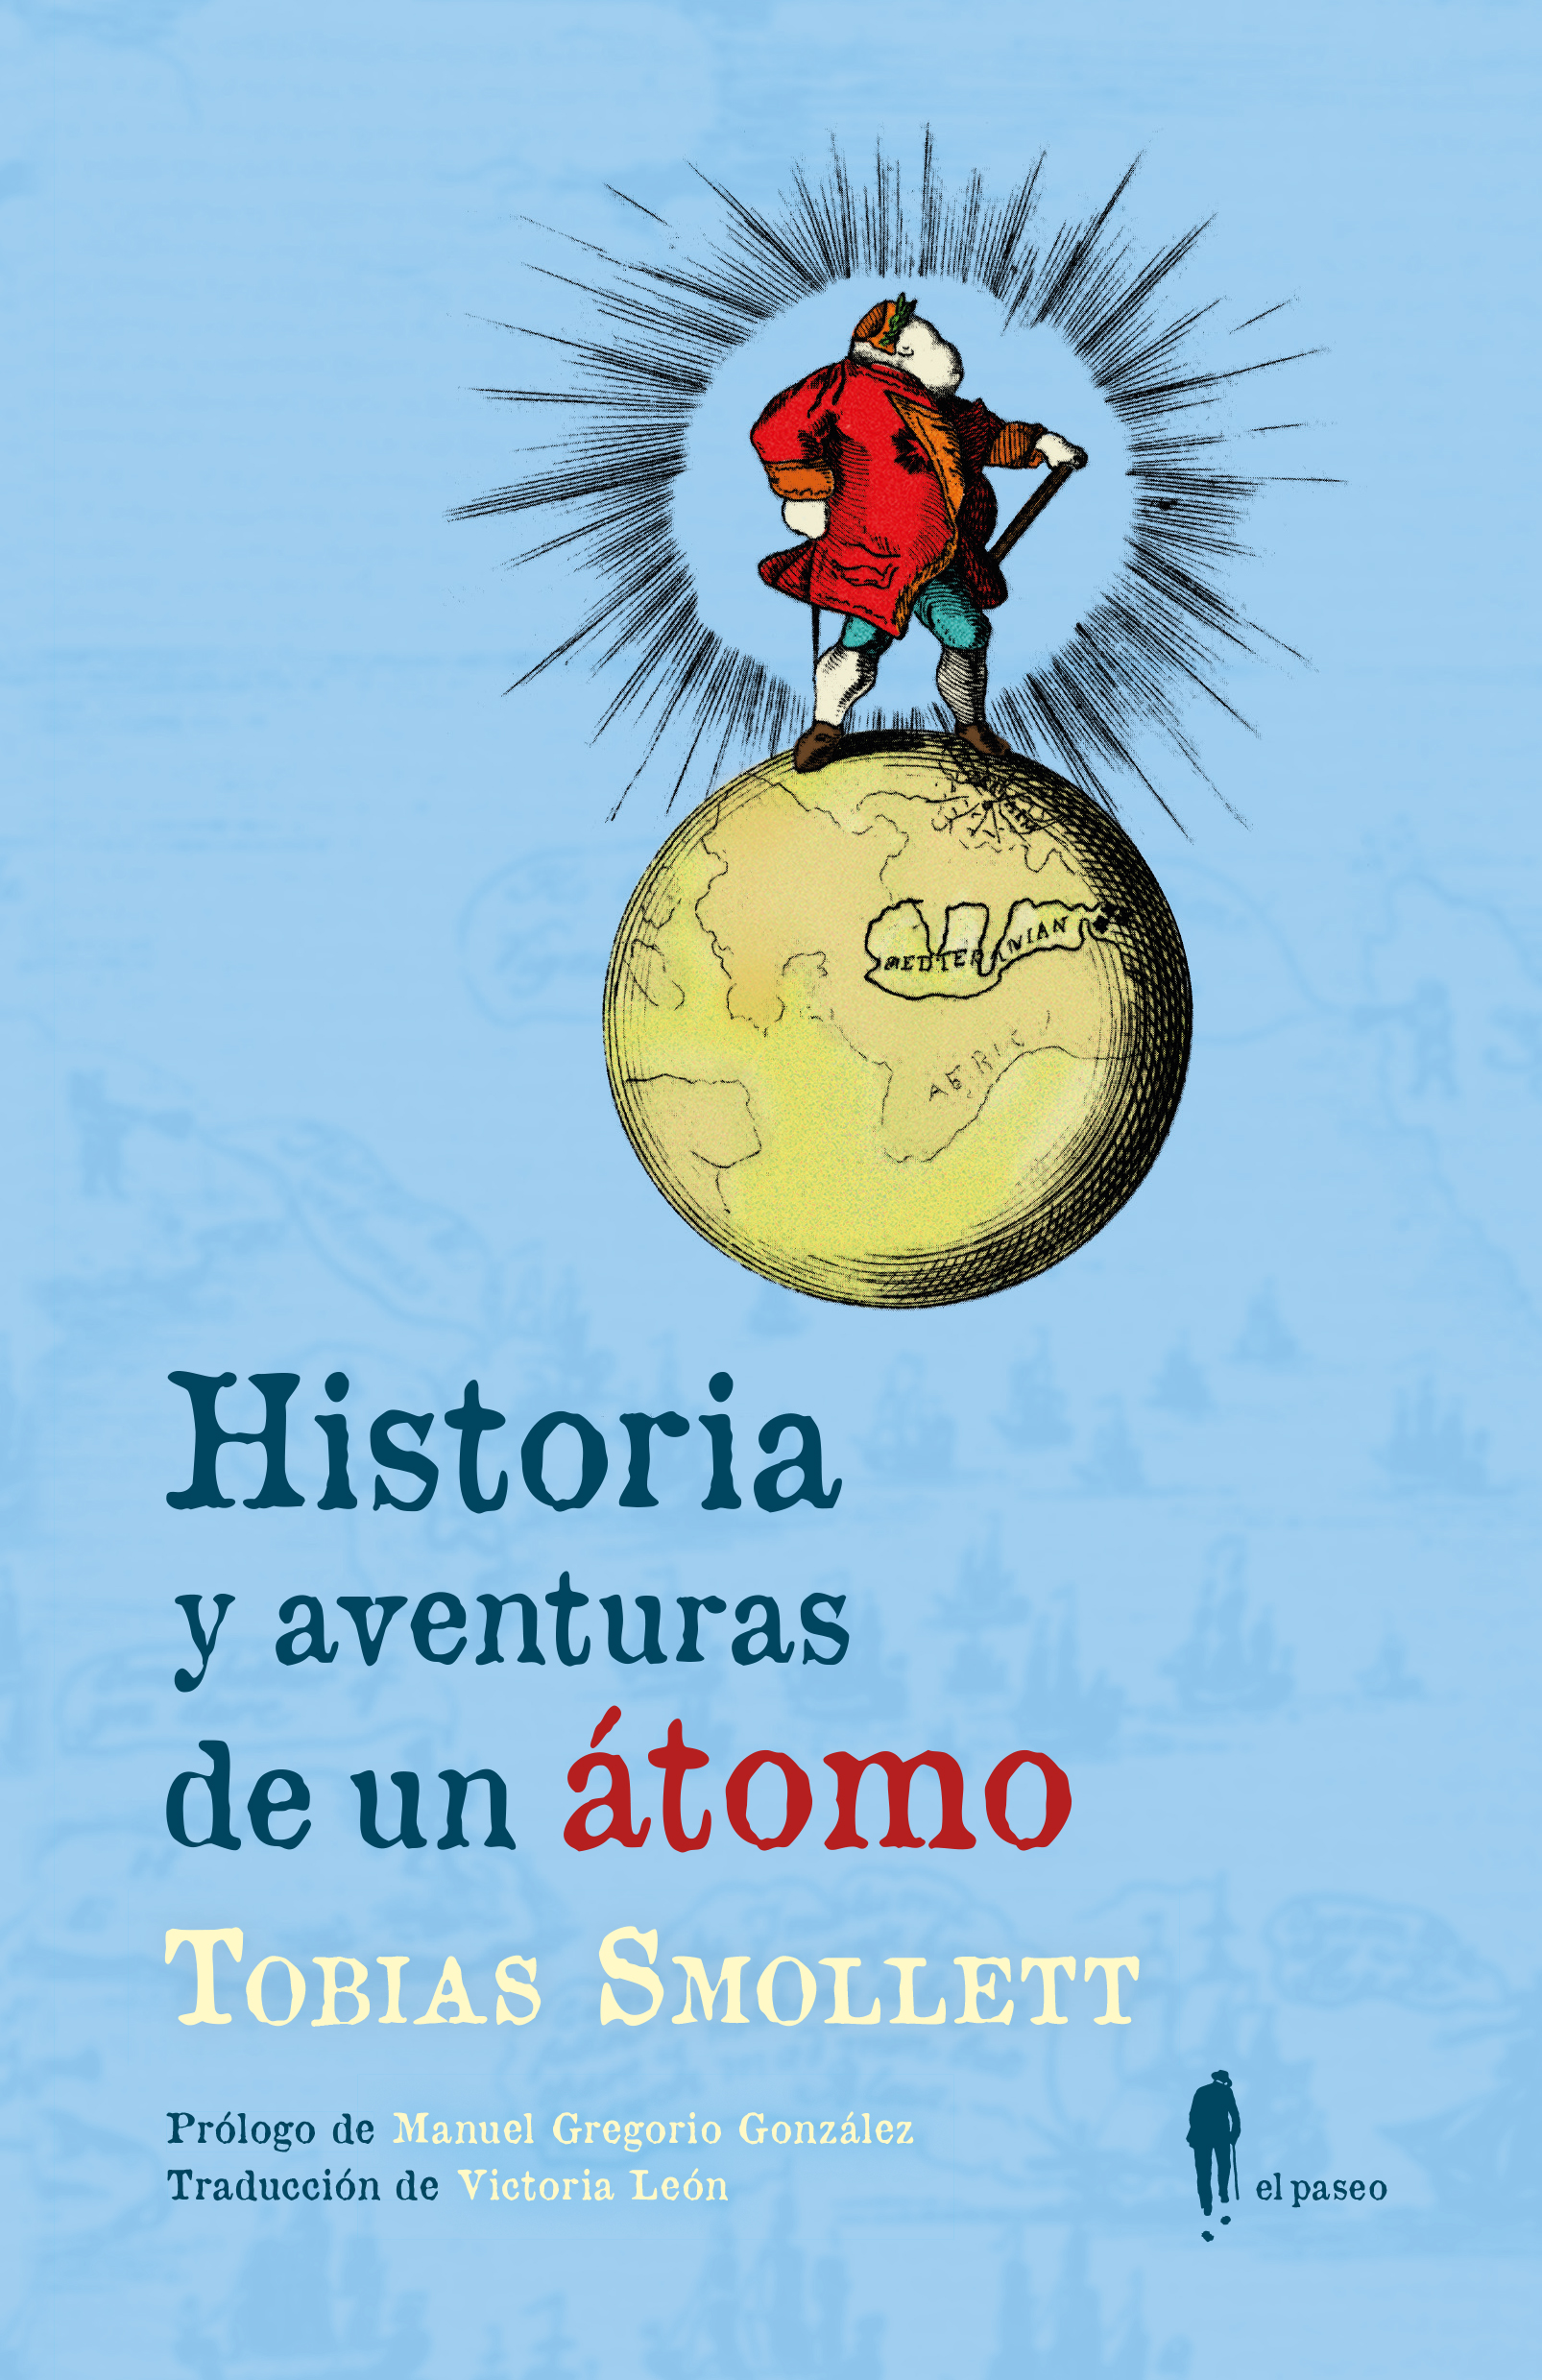 Historia y aventuras de un átomo